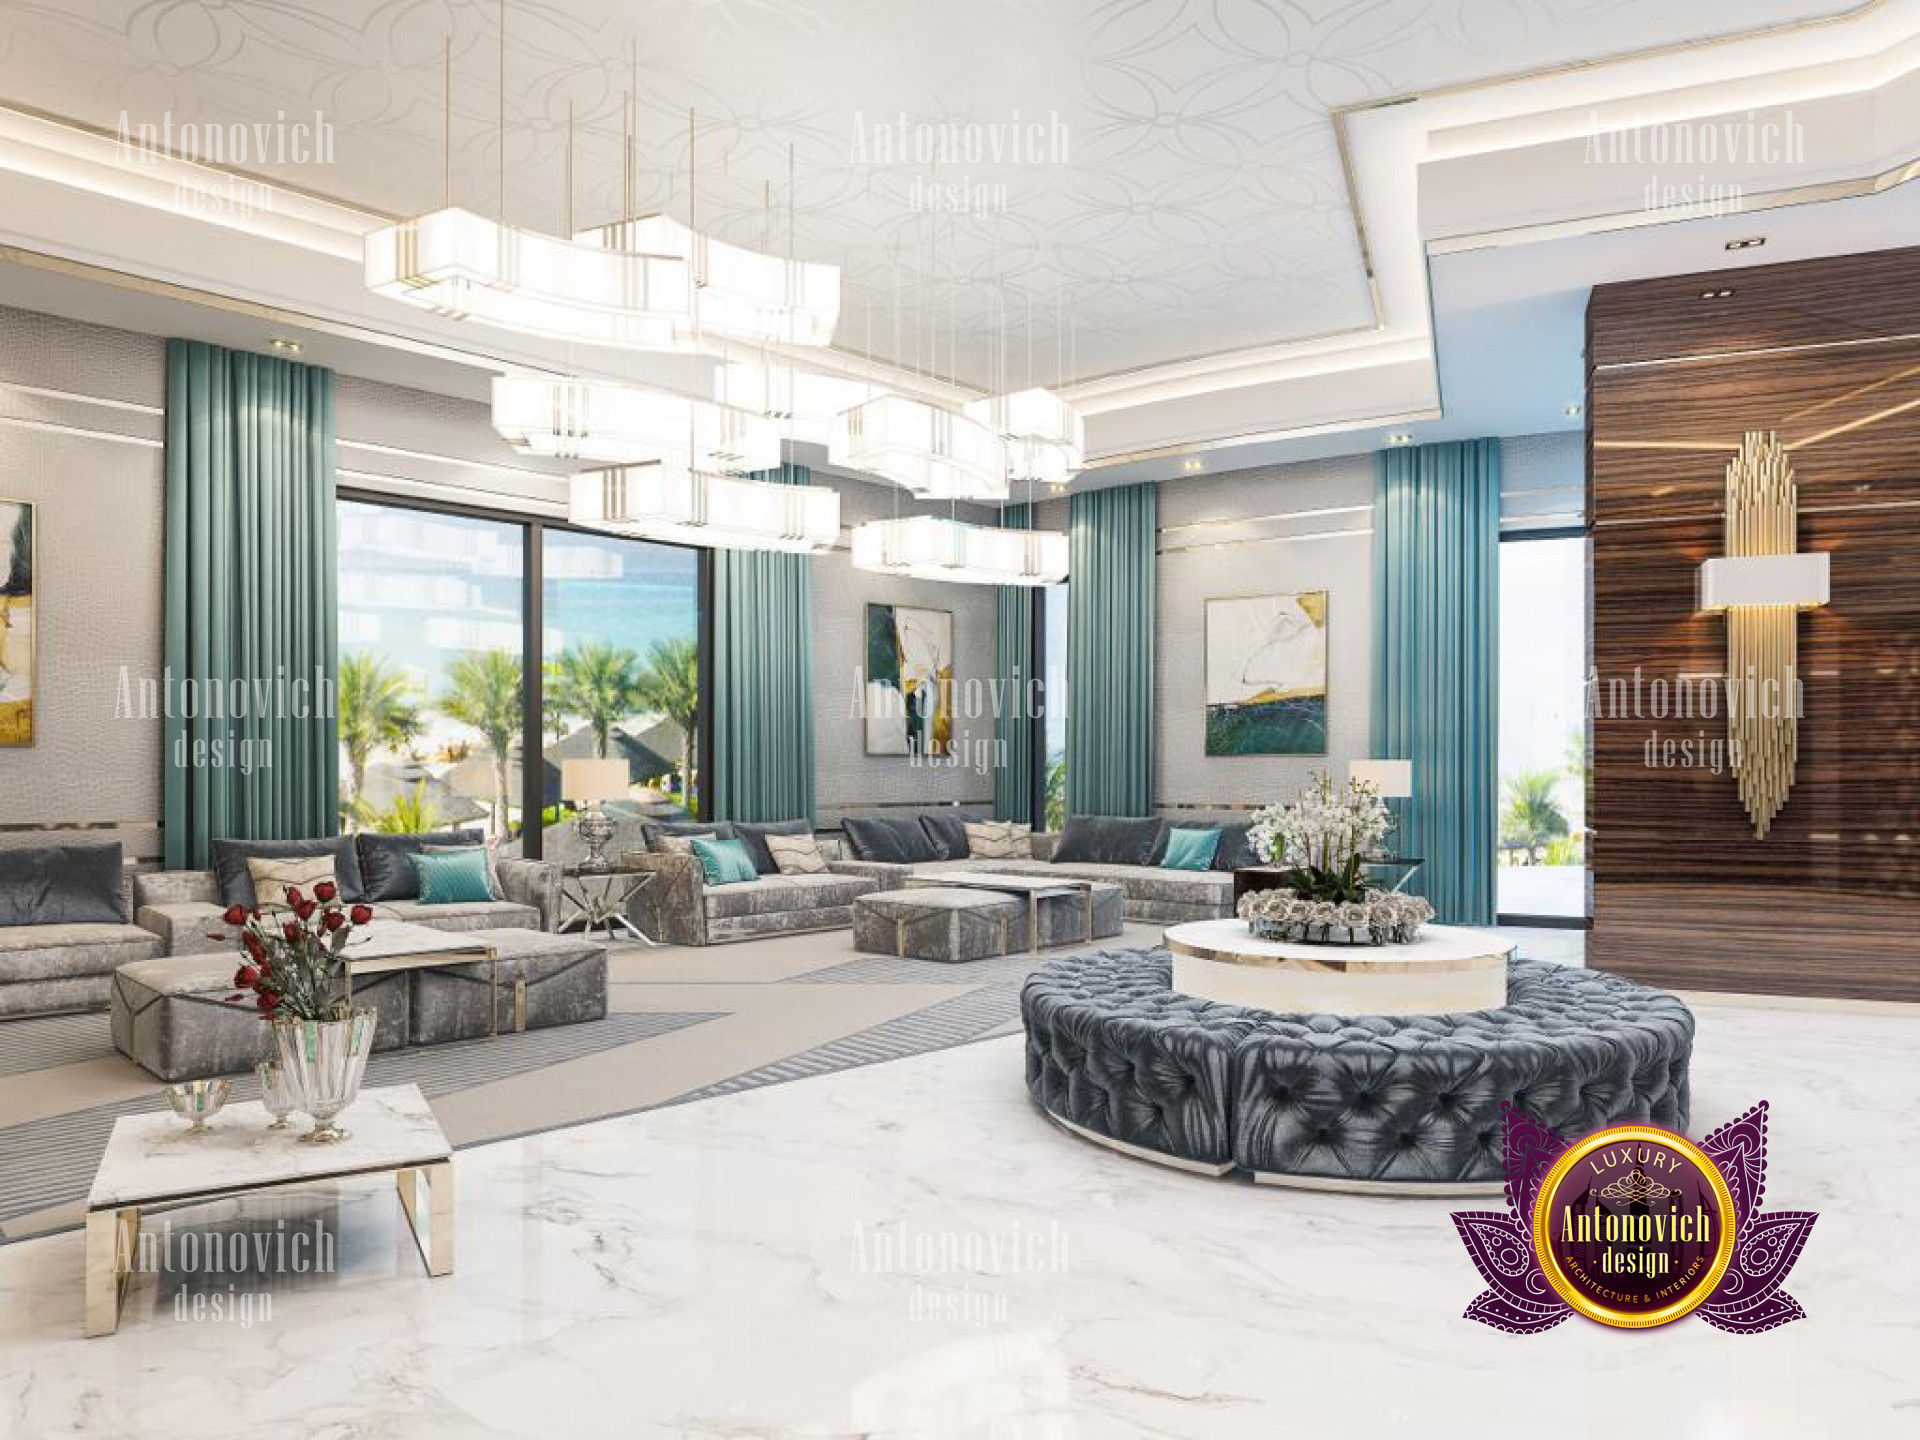 Modern villa interior design from top interior design company in Qatar